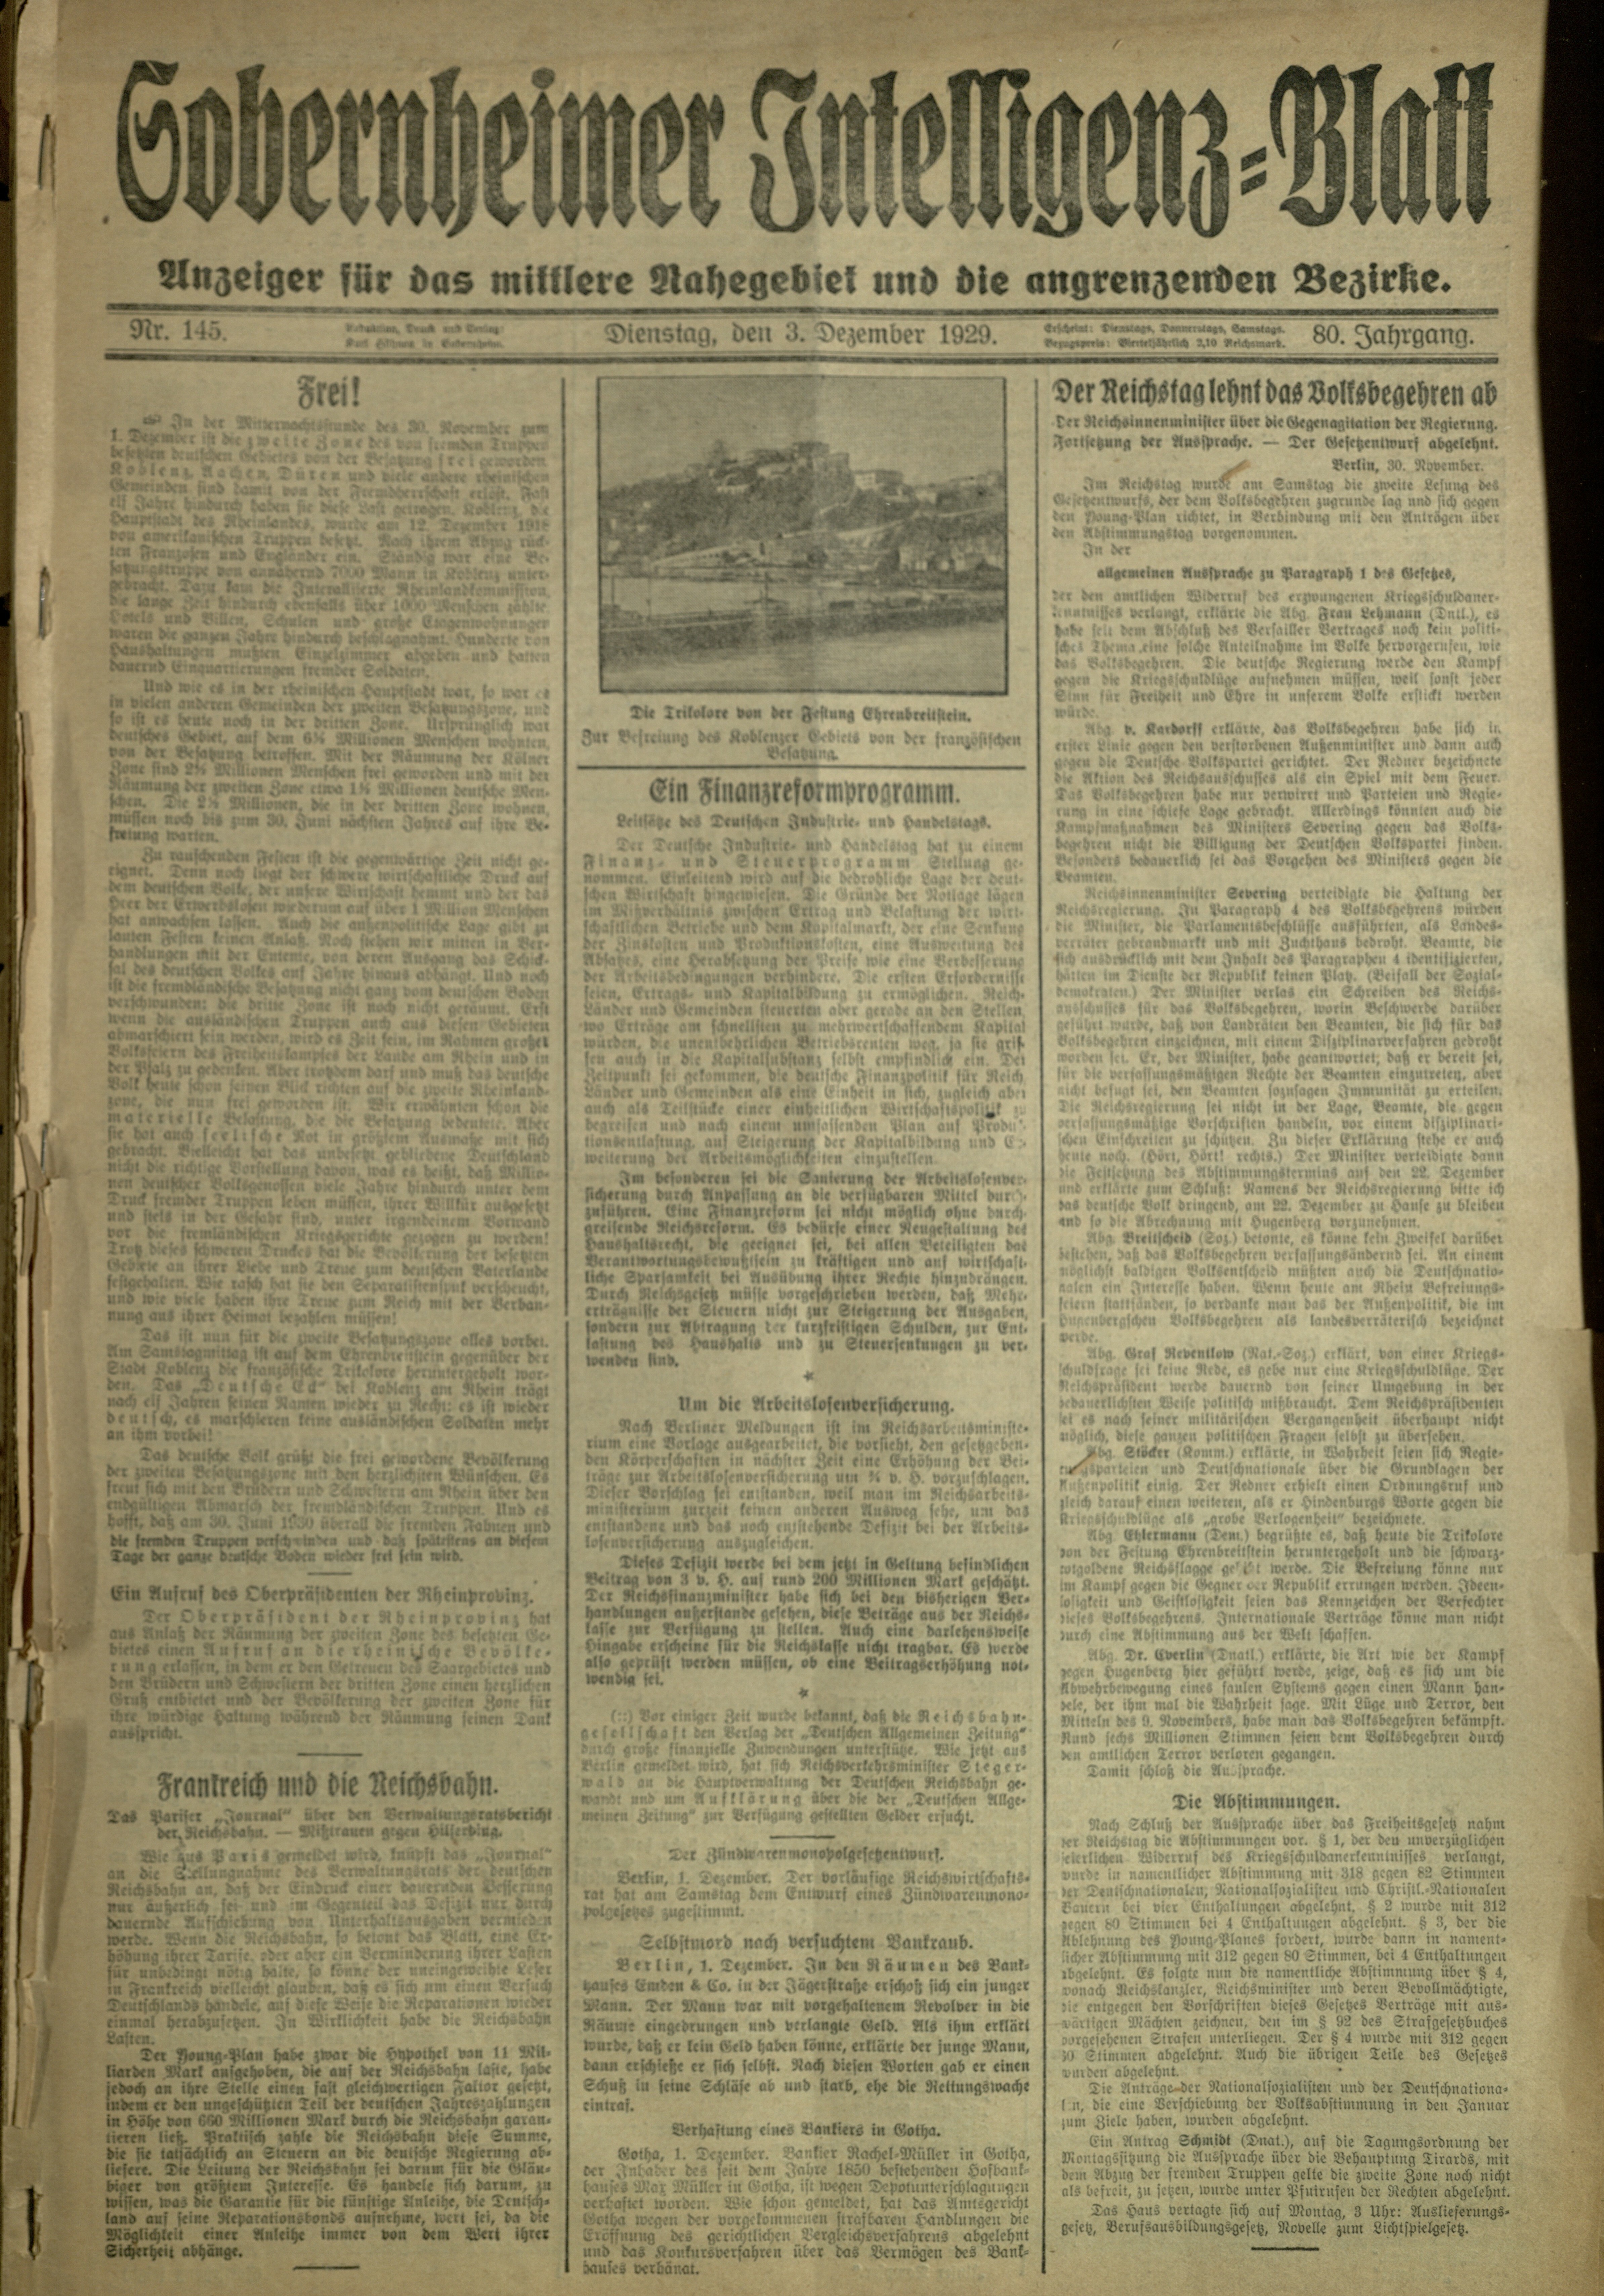 Zeitung: Sobernheimer Intelligenzblatt; Dezember 1929, Jg. 80 Nr. 145 (Heimatmuseum Bad Sobernheim CC BY-NC-SA)